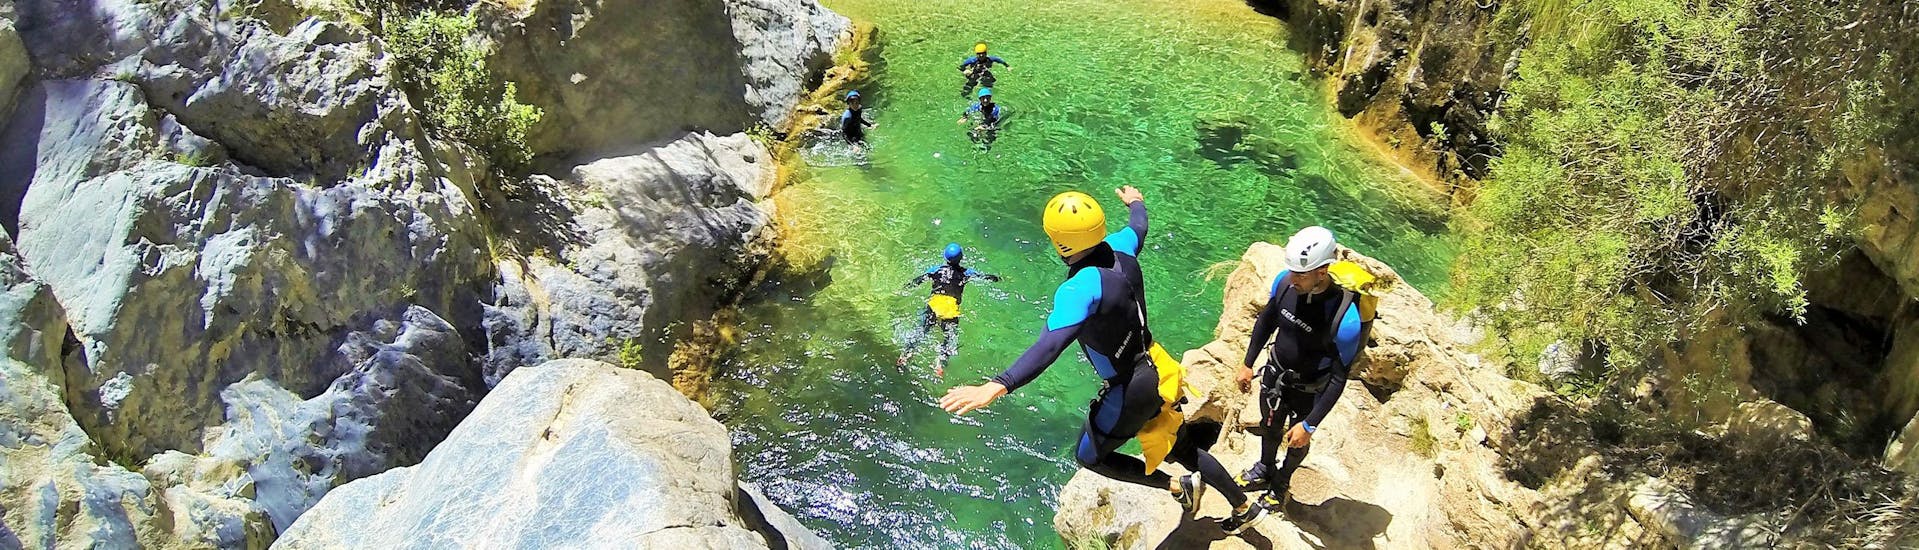 Eine Gruppe von Freunden springen von der Klippe ins glasklare Wasser während der Canyoning Anfänger Tour im Rio Verde, organisiert von Barranquismo Rio Verde.